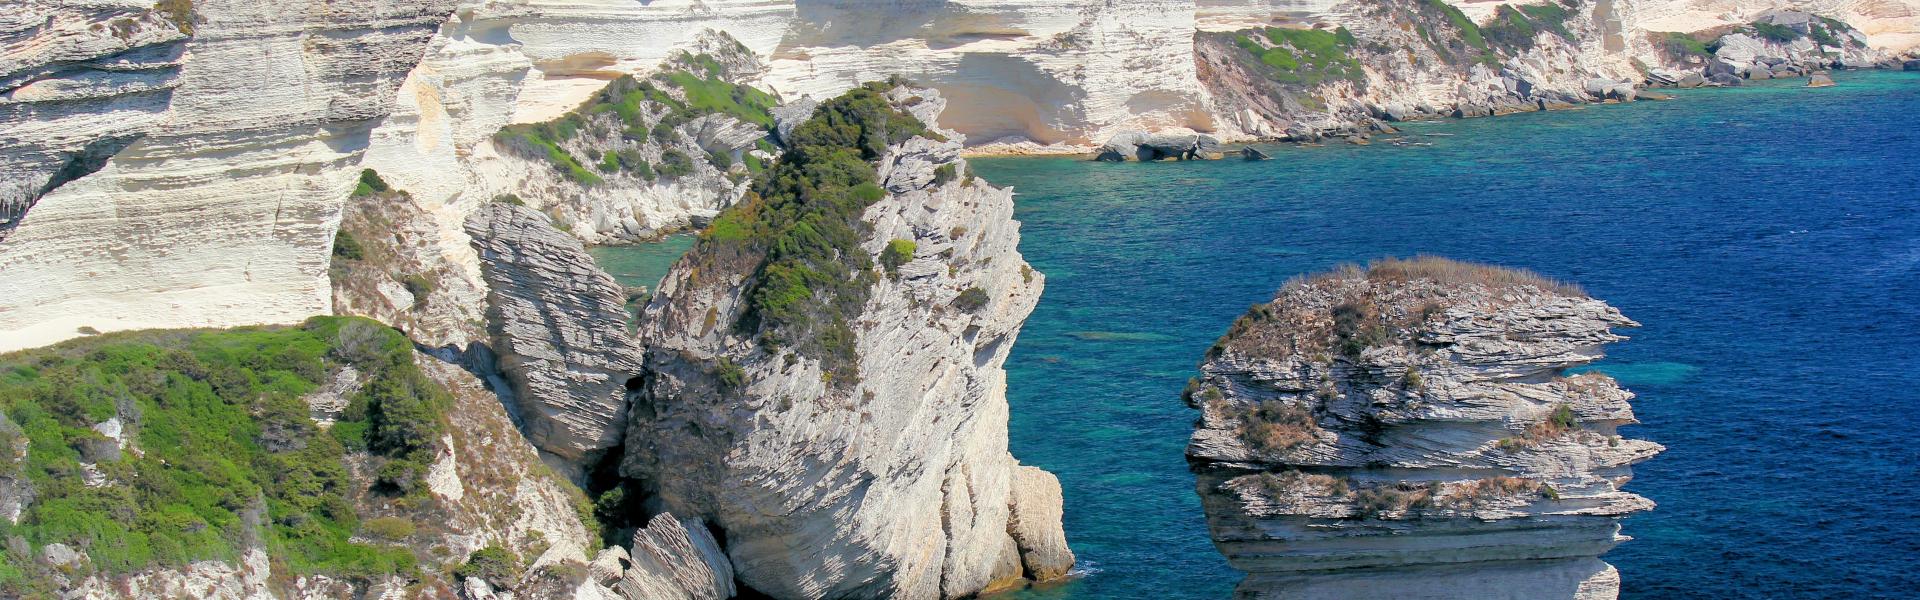 Location de vacances à Zonza - Corse-du-Sud - amivac